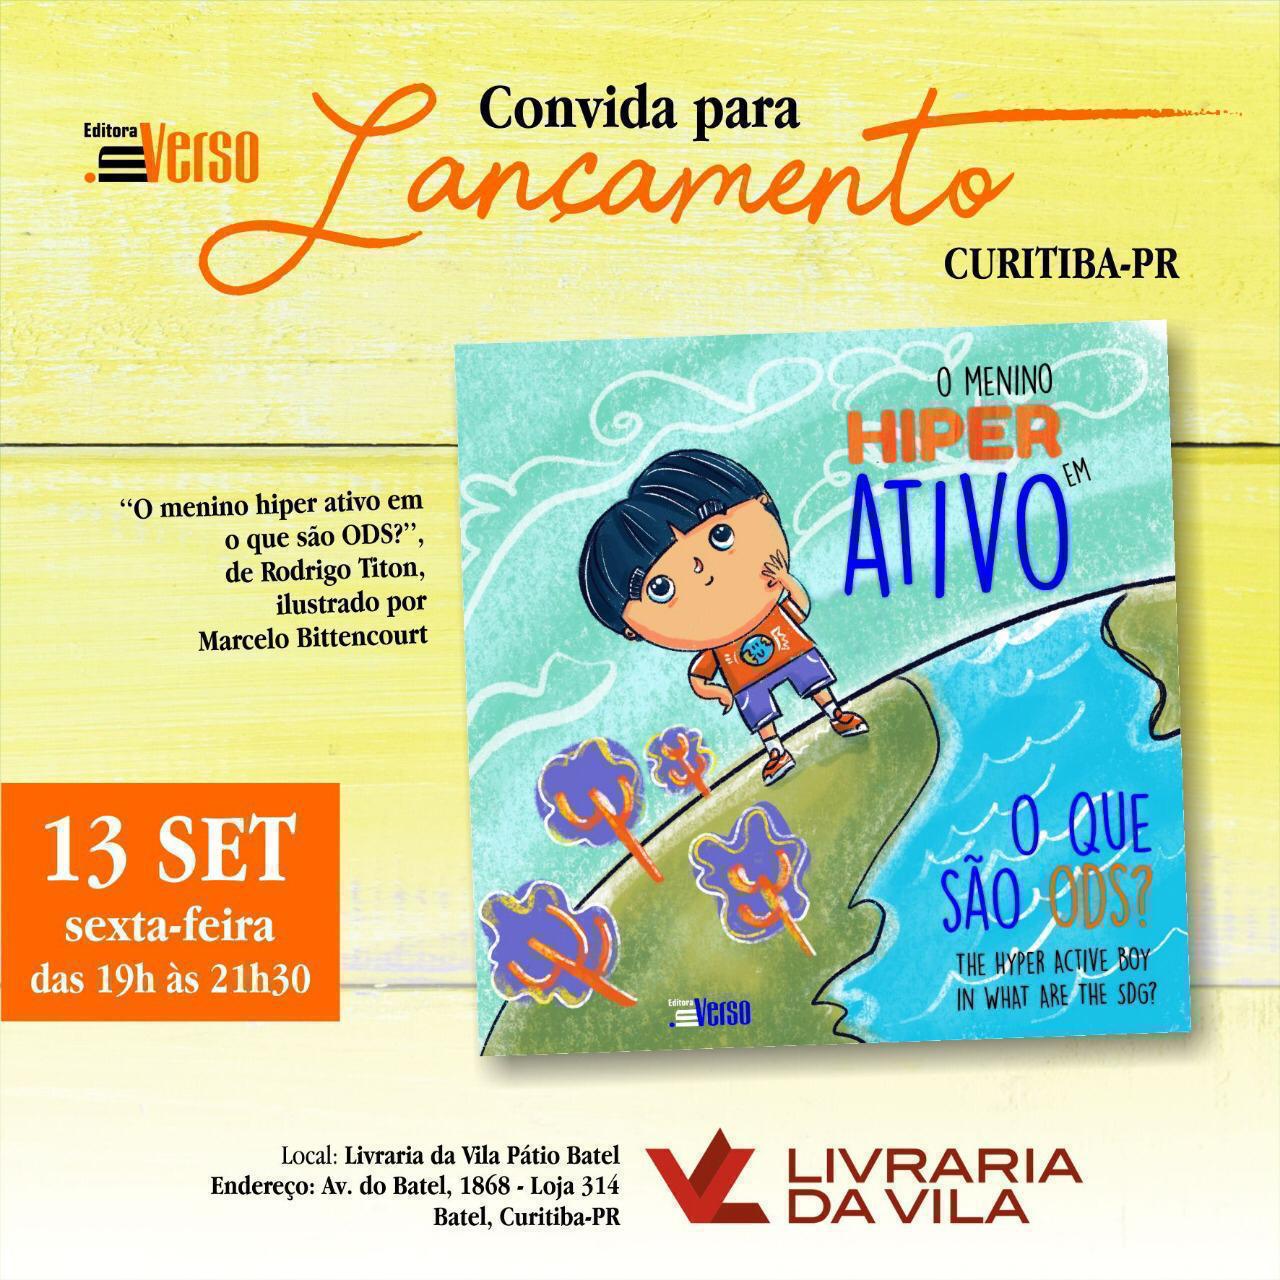  Segundo livro da coleção infantil “O Menino Hiper Ativo” é lançado em Curitiba